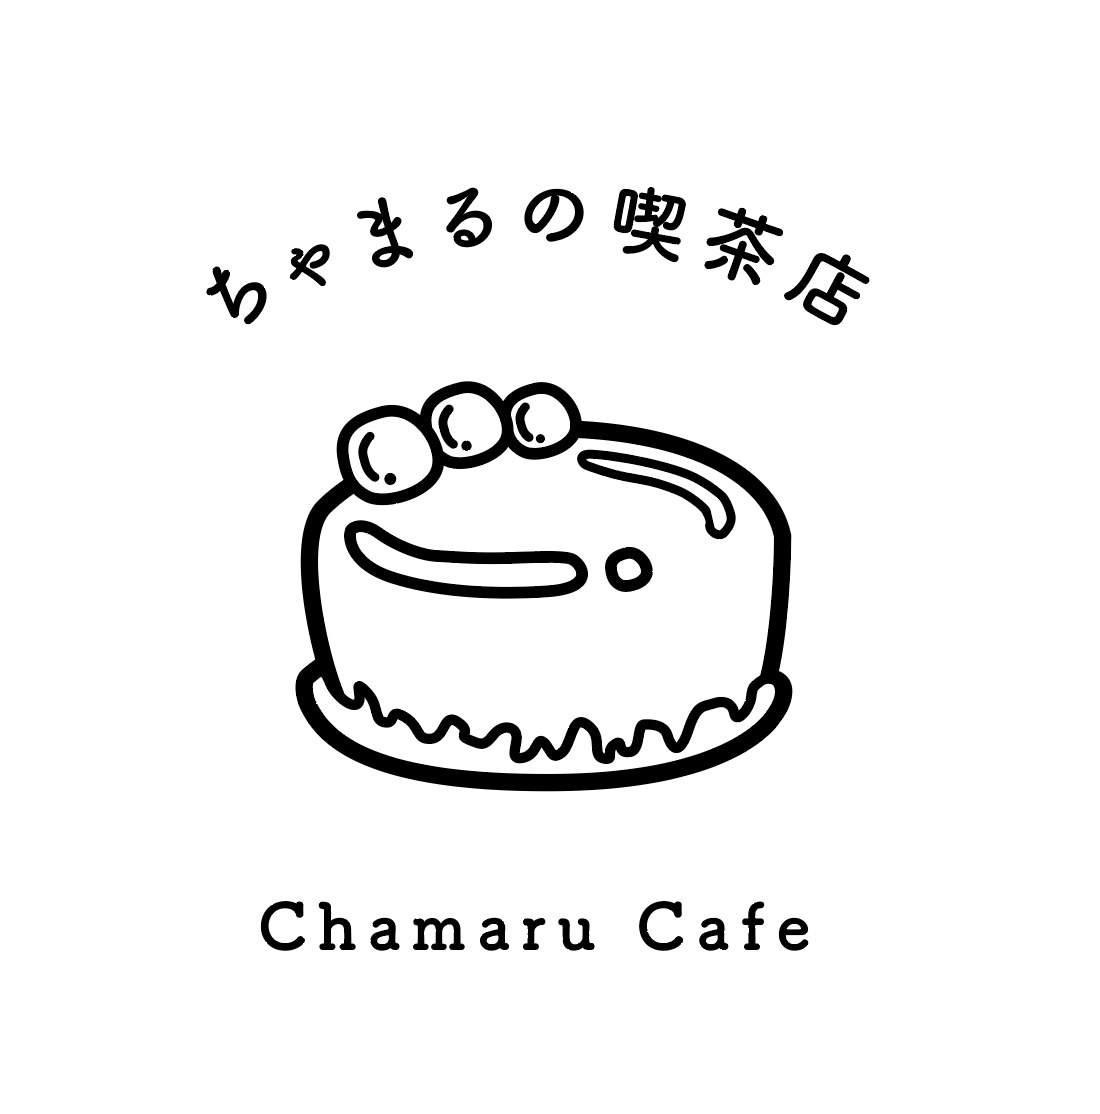 ちゃまるの喫茶店様 ロゴデザイン